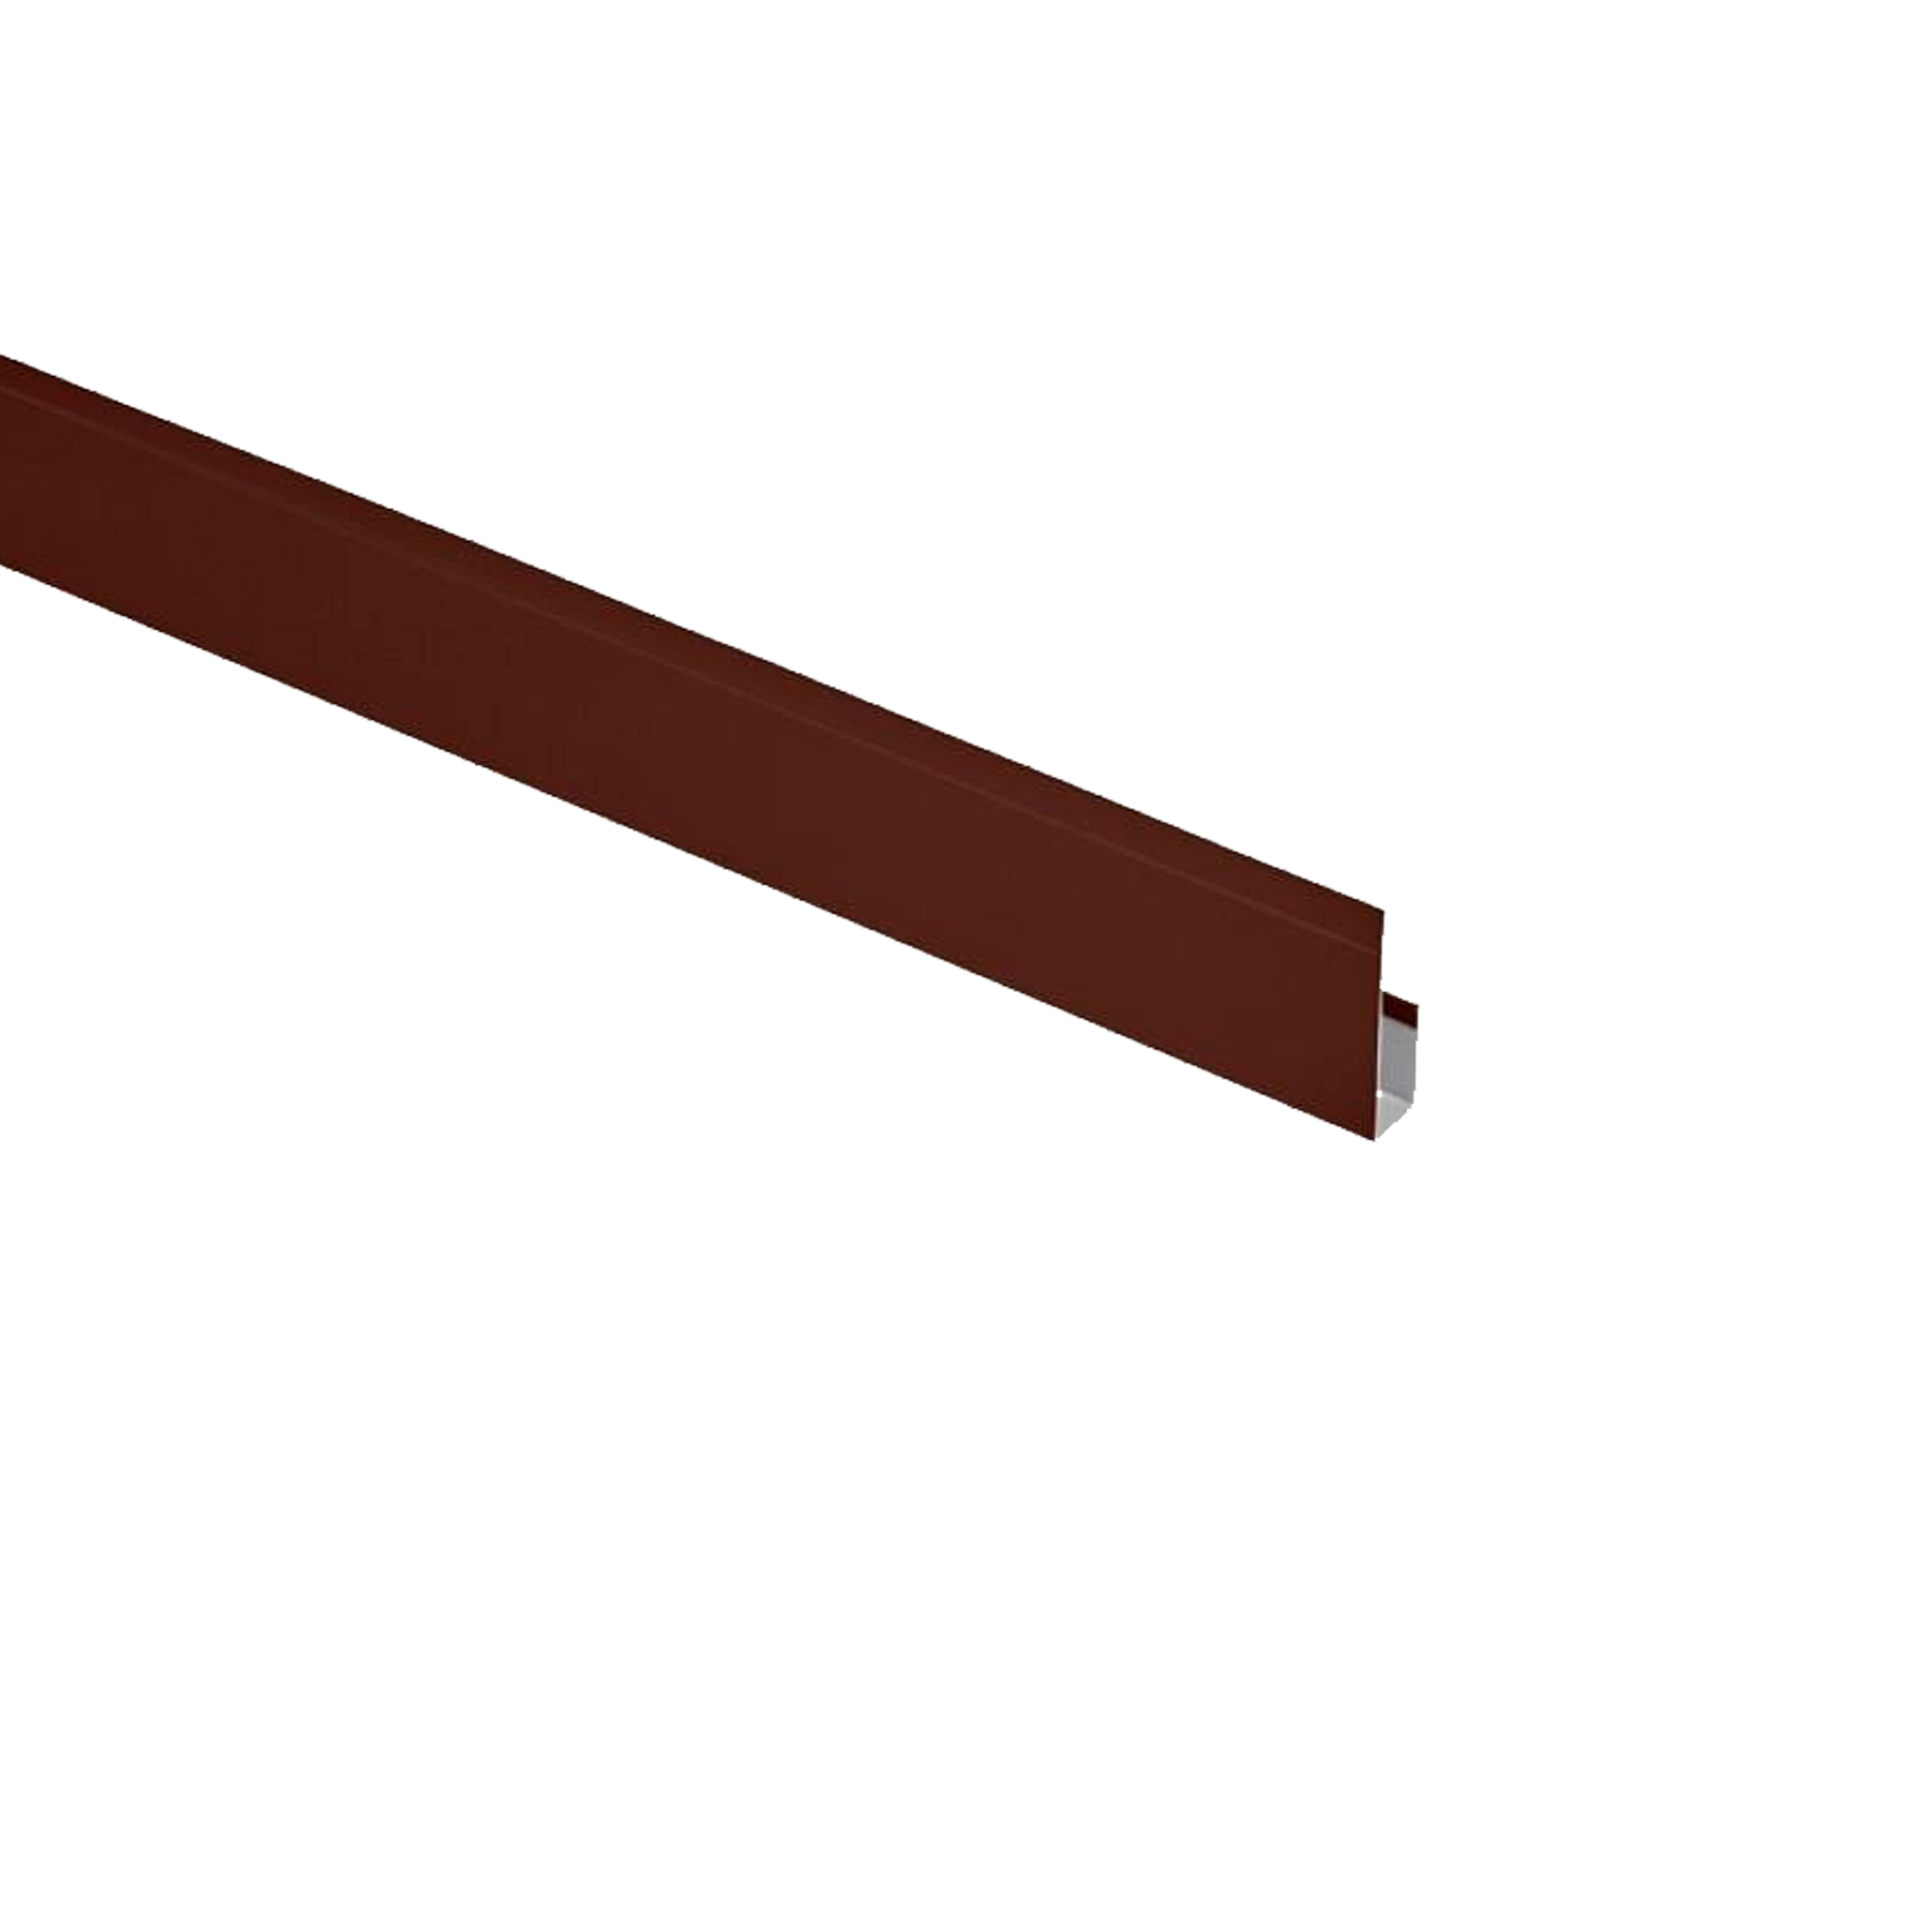 Планка завершающая Экобрус Шоколадно-коричневый 0,45 мм Полиэстер Доборные элементы для сайдинга Кровля Сервис